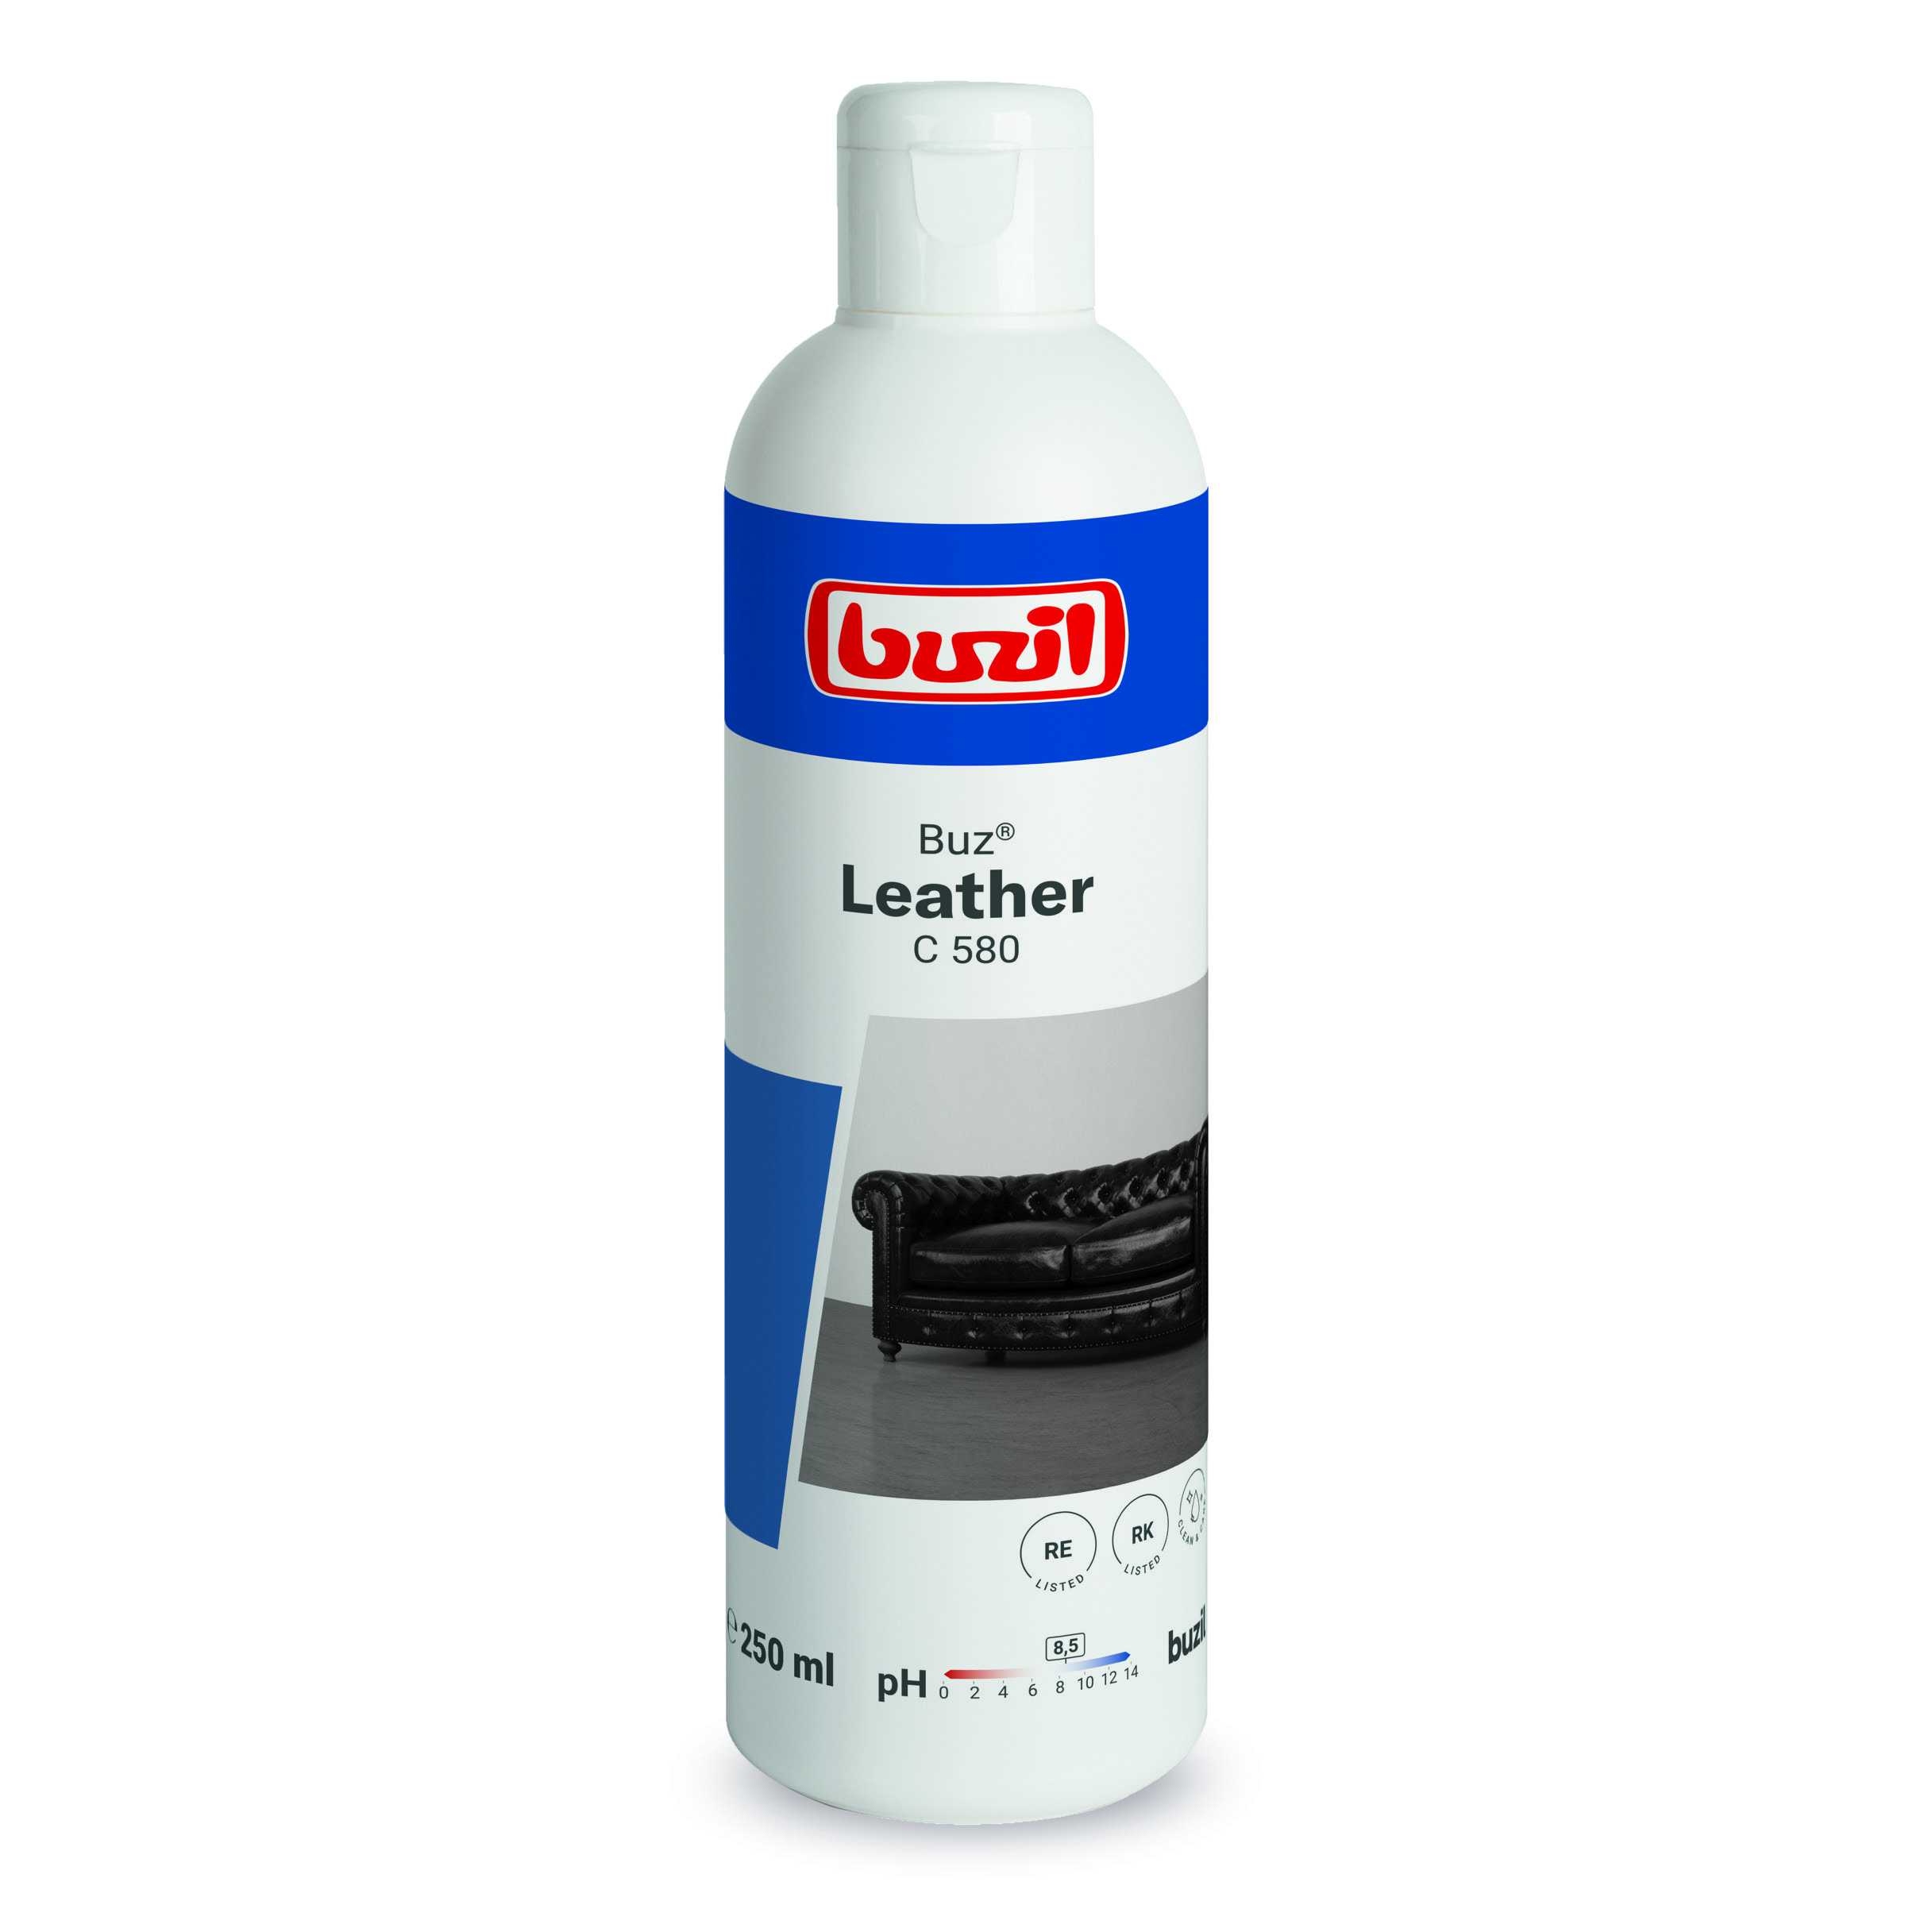 C580 Buz® Leather 250 ml Universalpflege für alle Glattleder